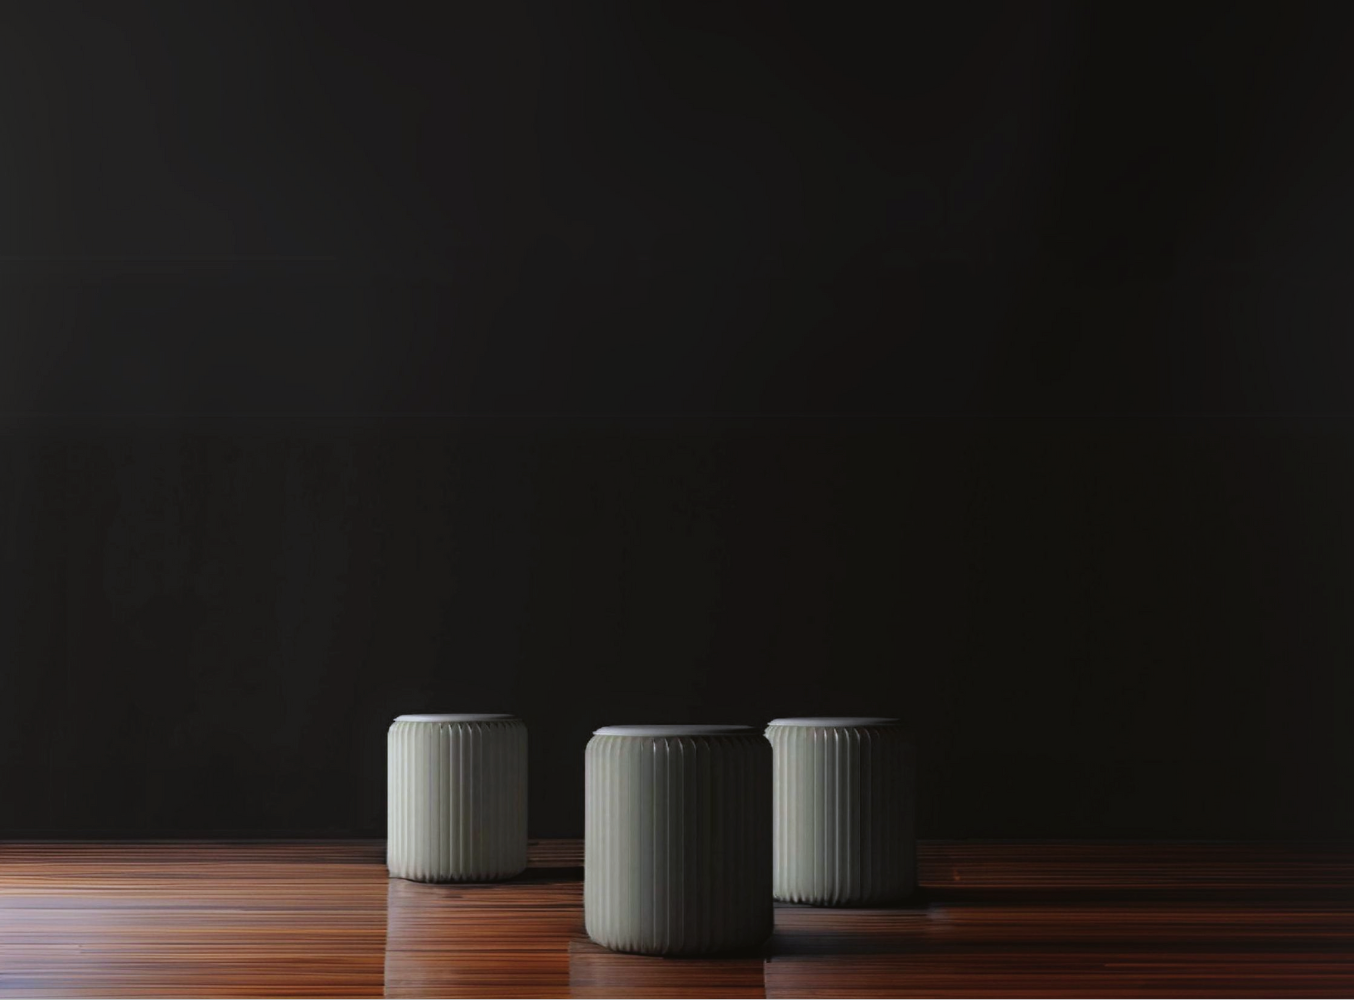 3 white foldable stools minimalistic elegan design on wooden floor